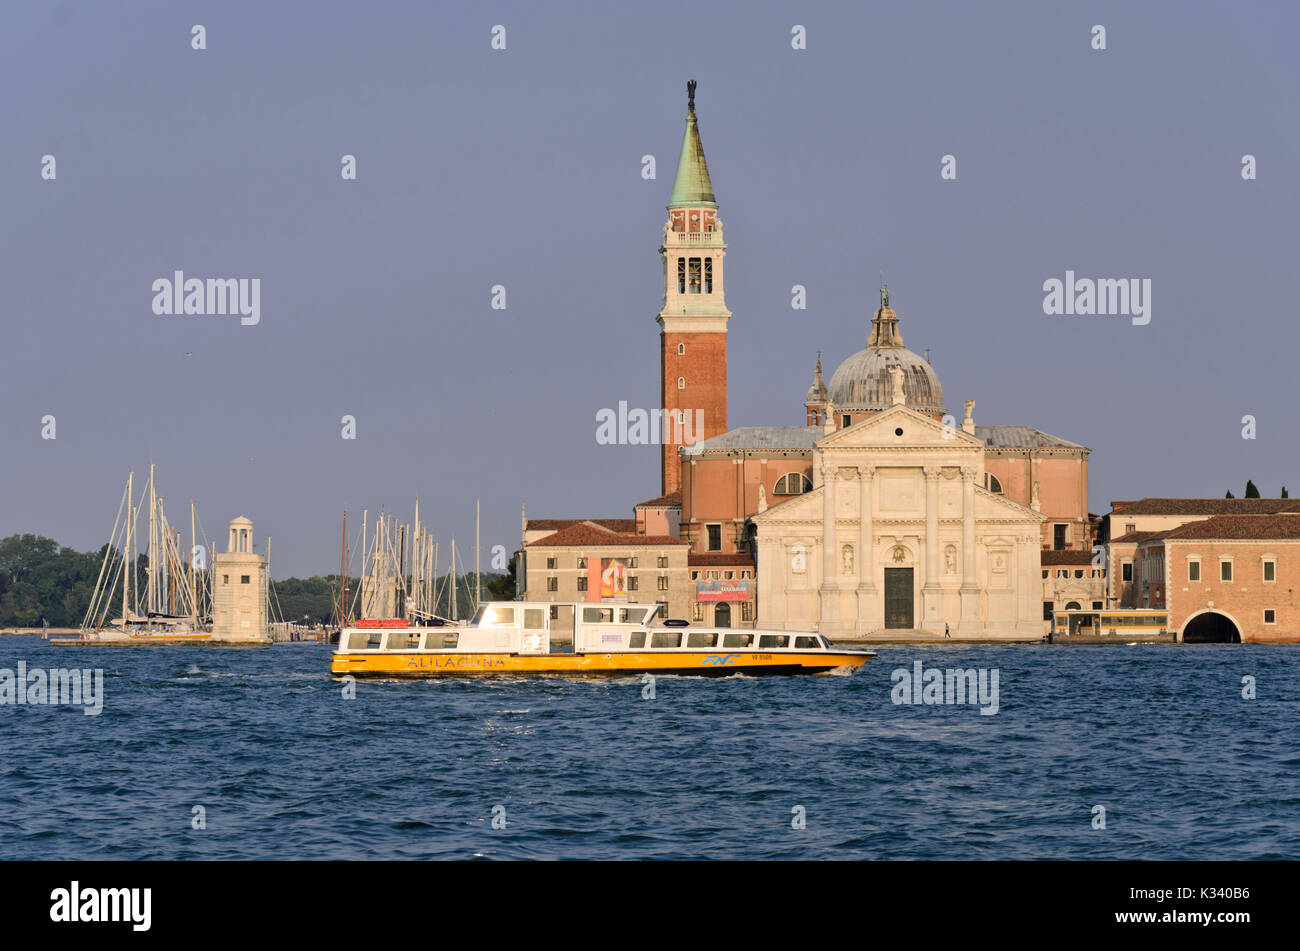 Basilica San Giorgio Maggiore and Campanile San Giorgio Maggiore, Venice, Italy Stock Photo